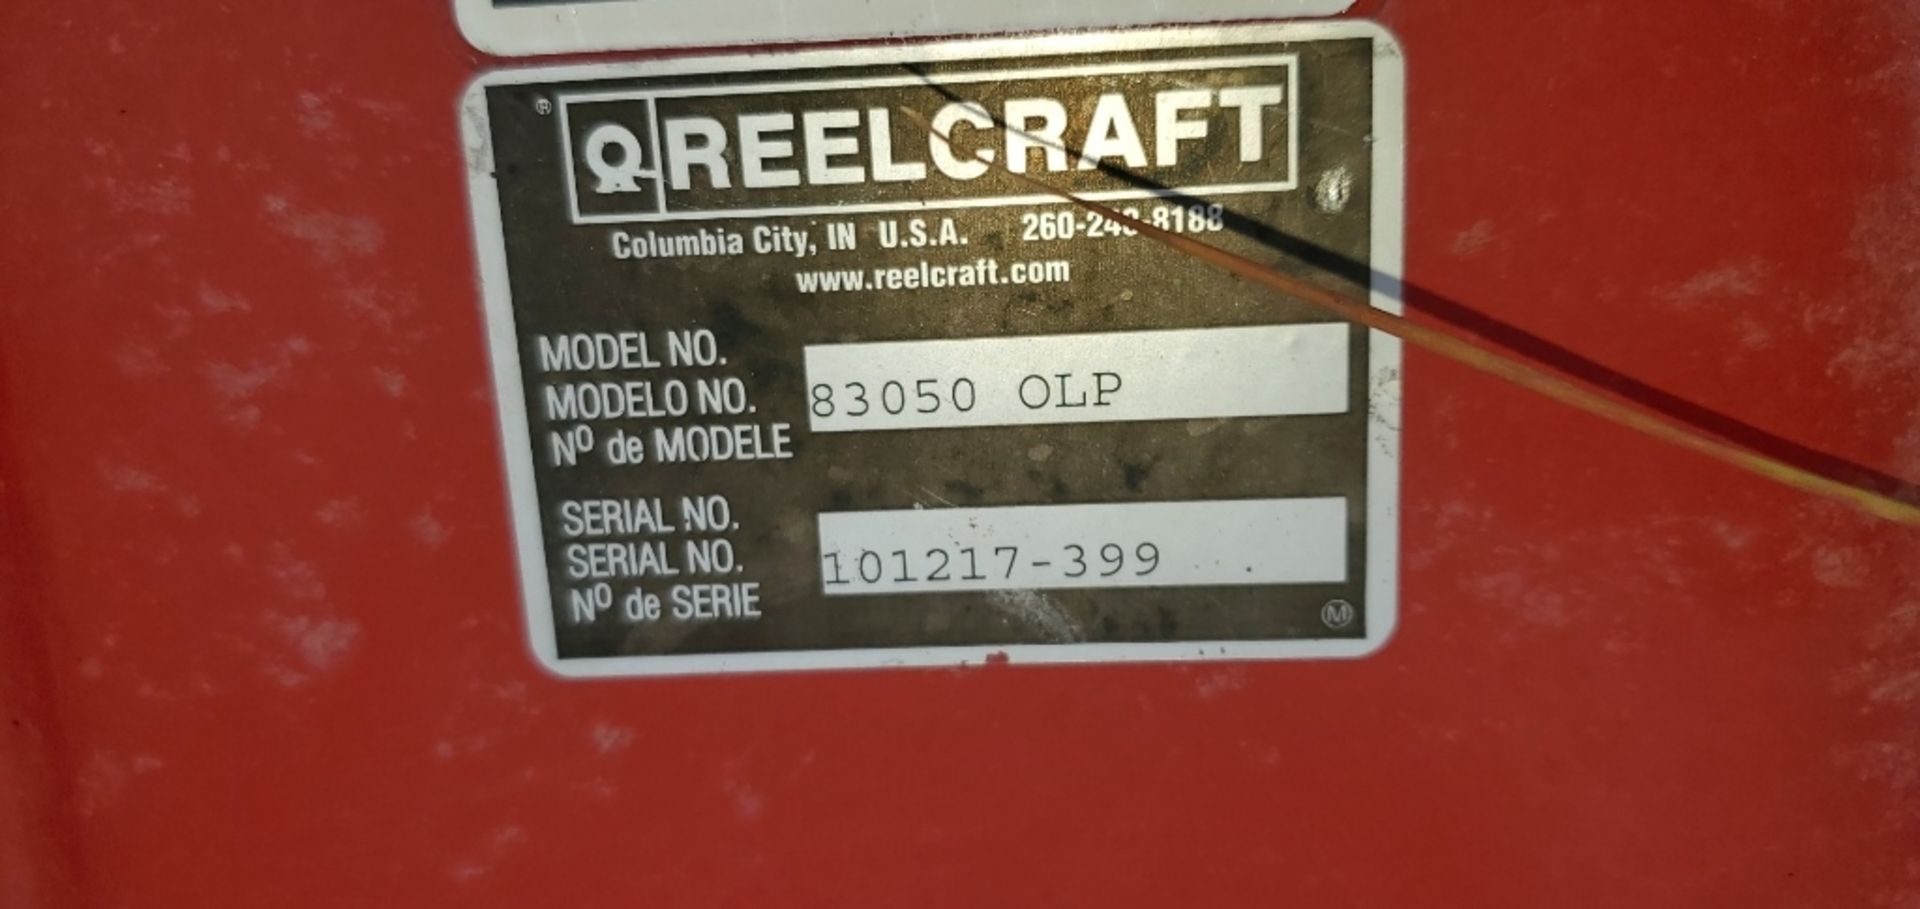 (2) Reelcraft Model 83050 OPL Hose Reels & Hose - Image 2 of 3